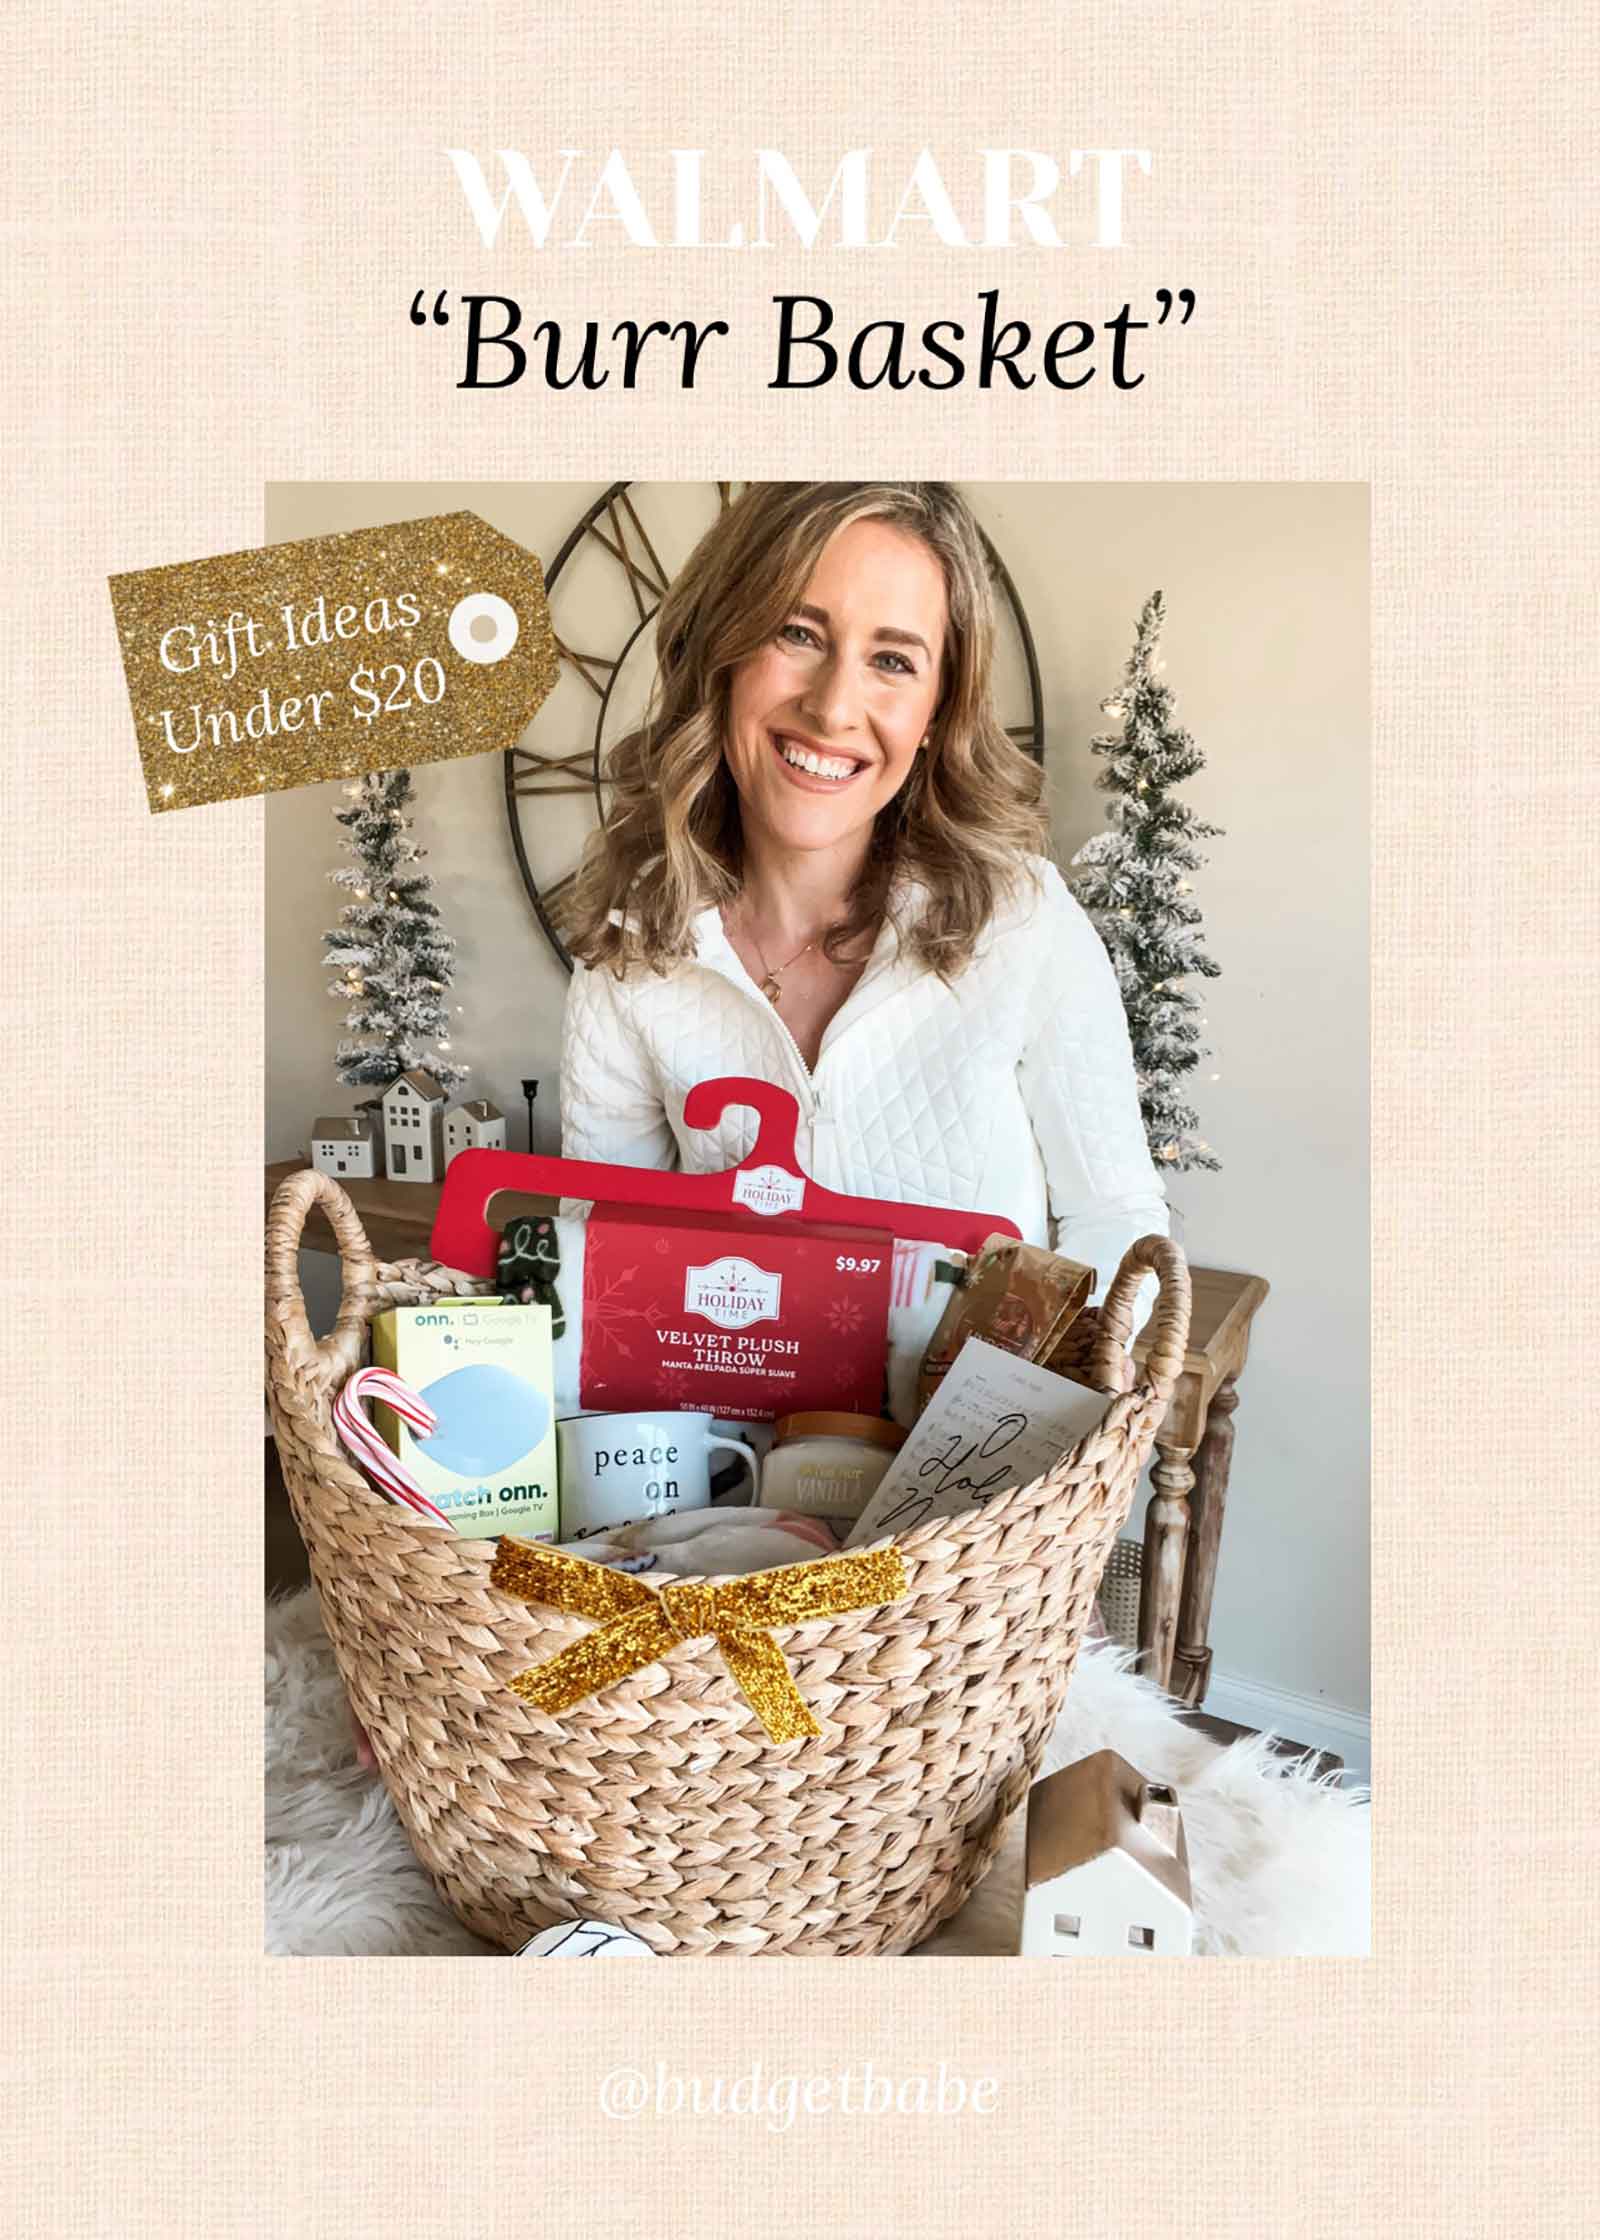 Walmart 'burr basket' gift ideas under $20!